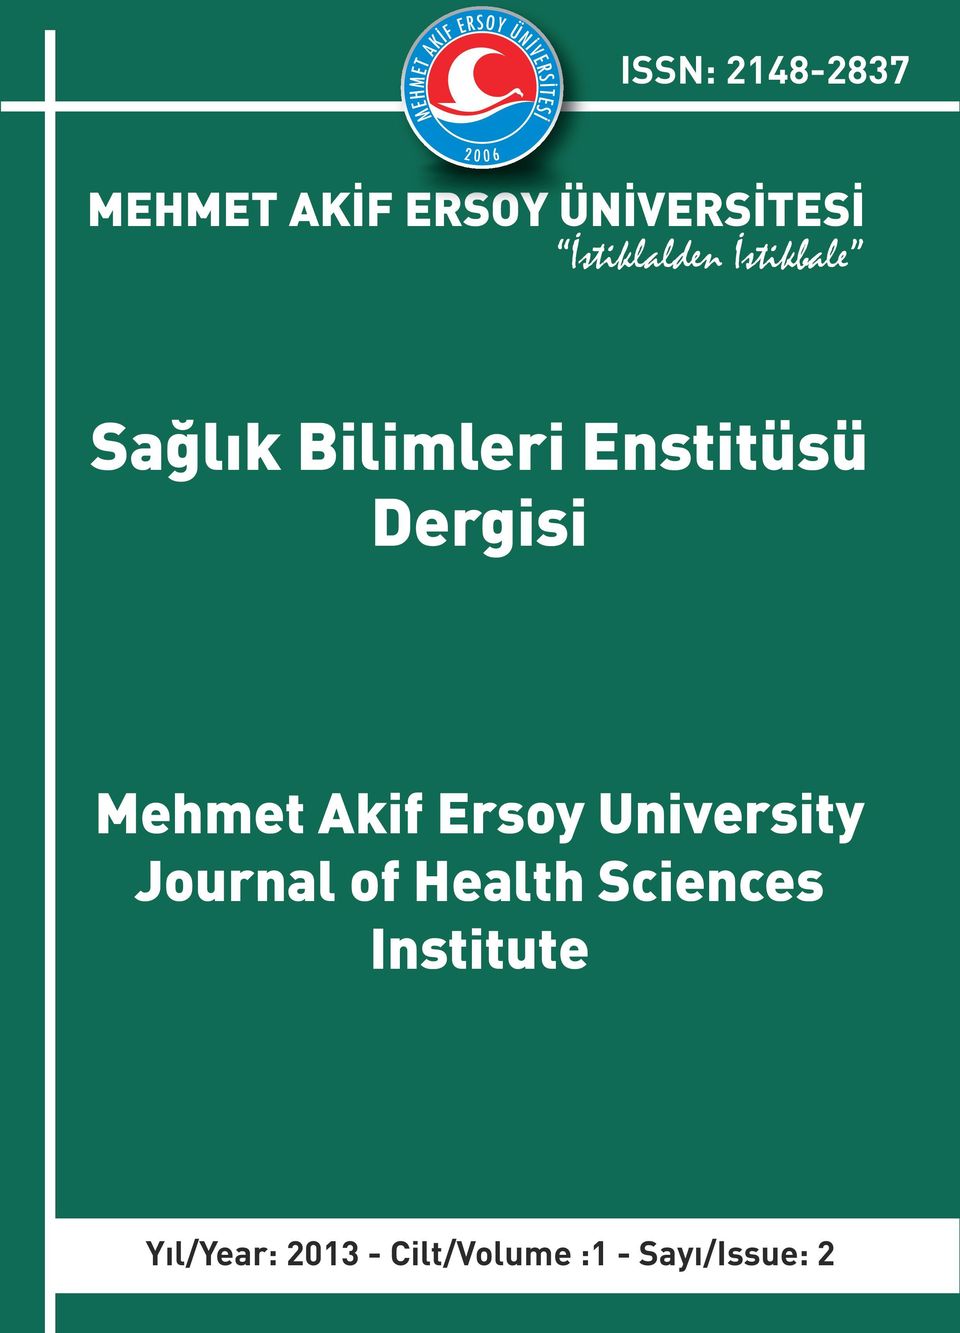 Dergisi Mehmet Akif Ersoy University Journal of Health